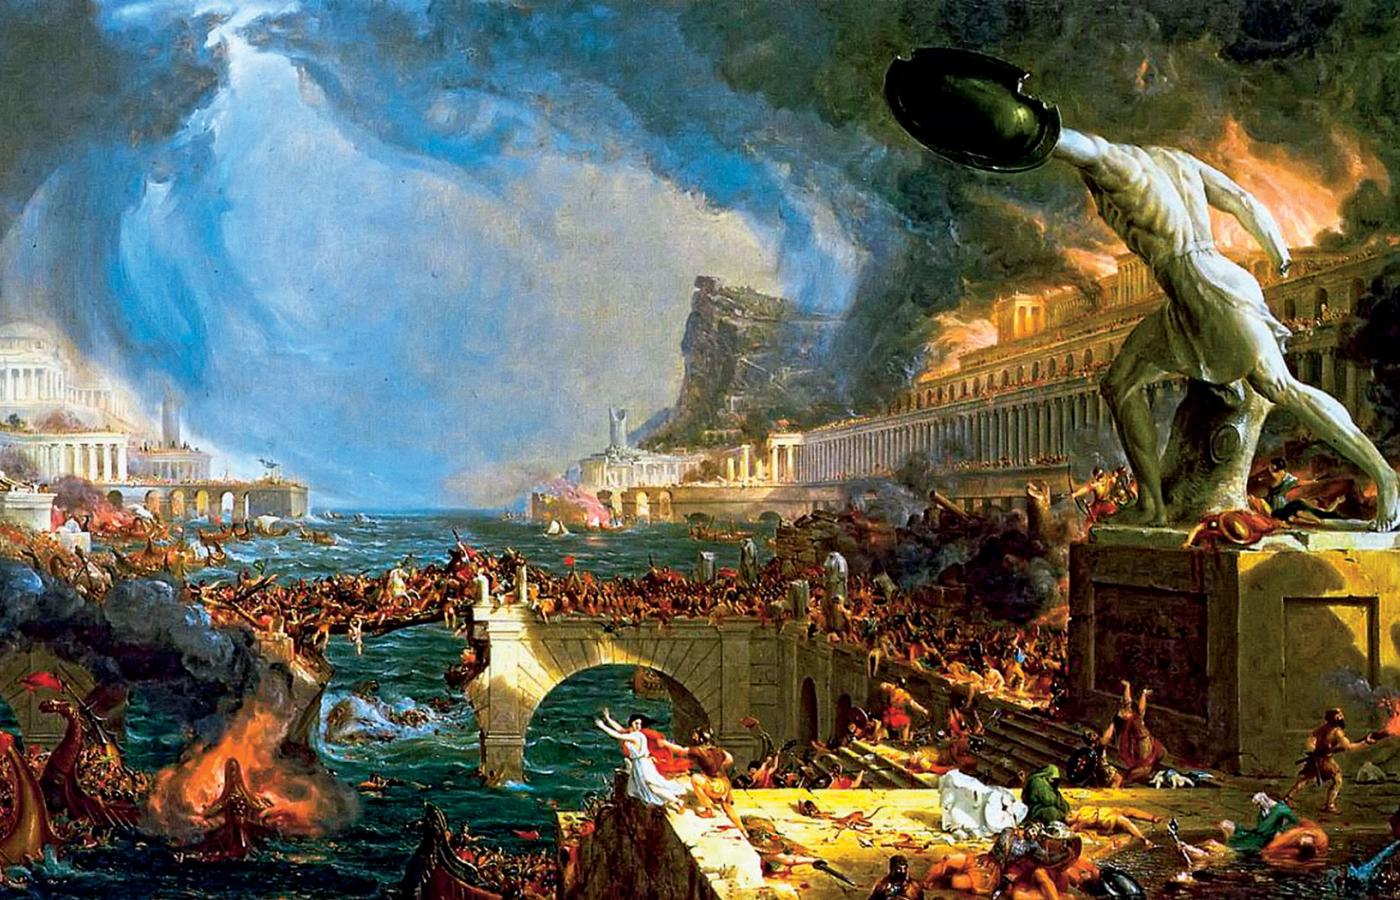 Inwazja Wizygotów na Rzym, obraz Thomasa Cole'a z lat 40. XIX w.